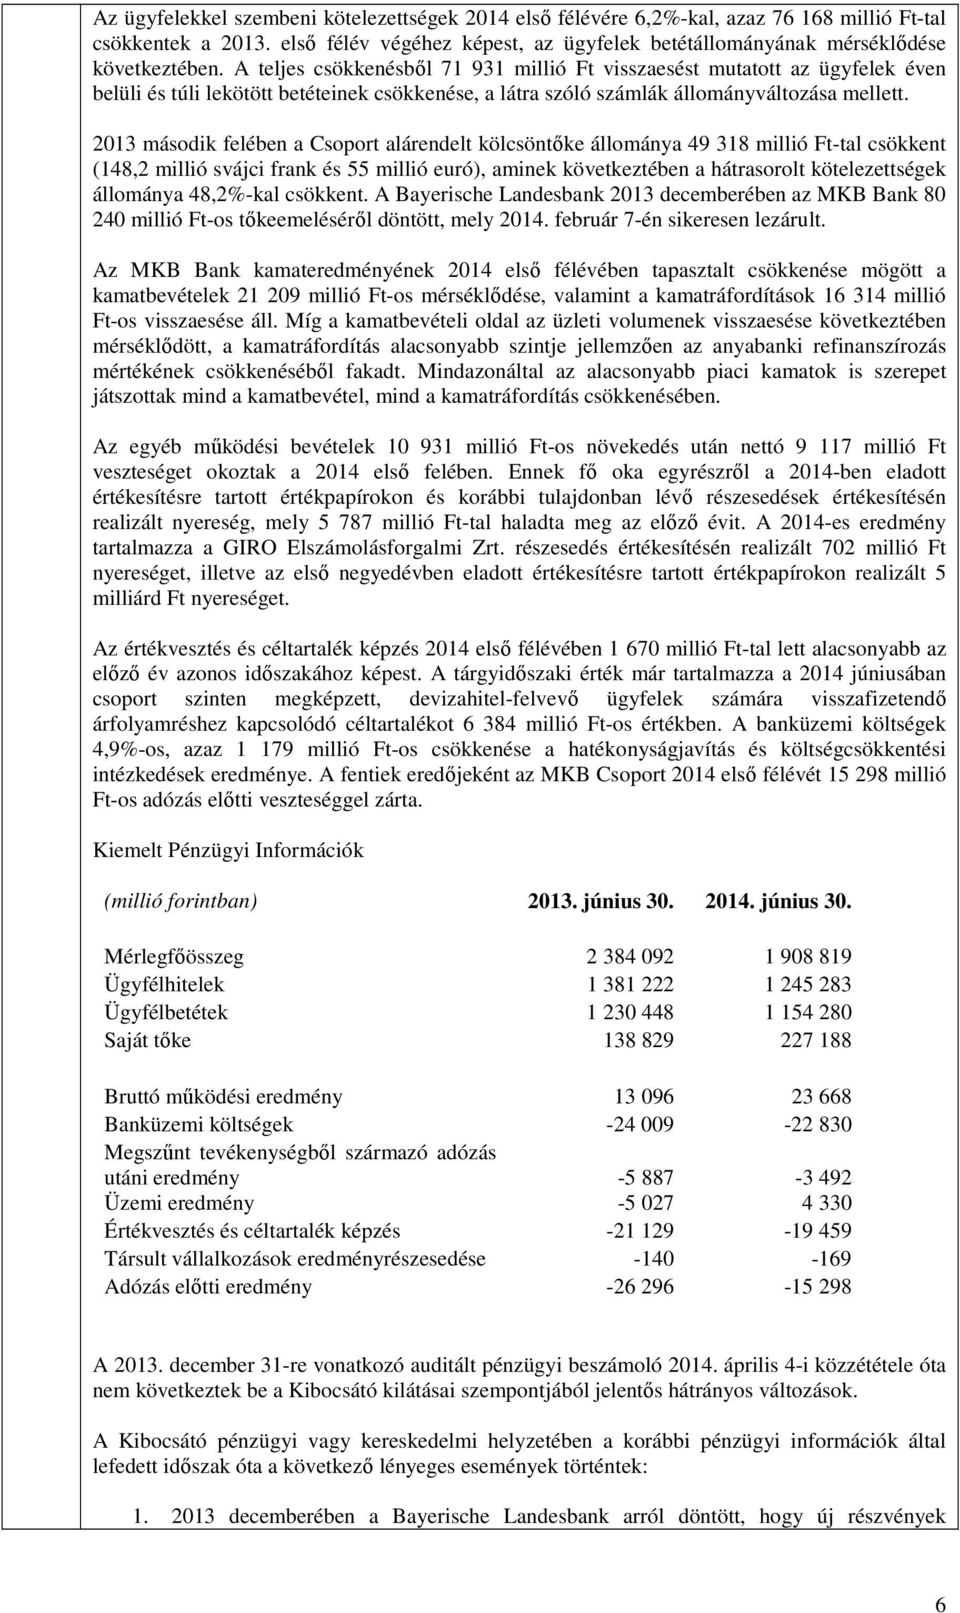 2013 második felében a Csoport alárendelt kölcsöntőke állománya 49 318 millió Ft-tal csökkent (148,2 millió svájci frank és 55 millió euró), aminek következtében a hátrasorolt kötelezettségek